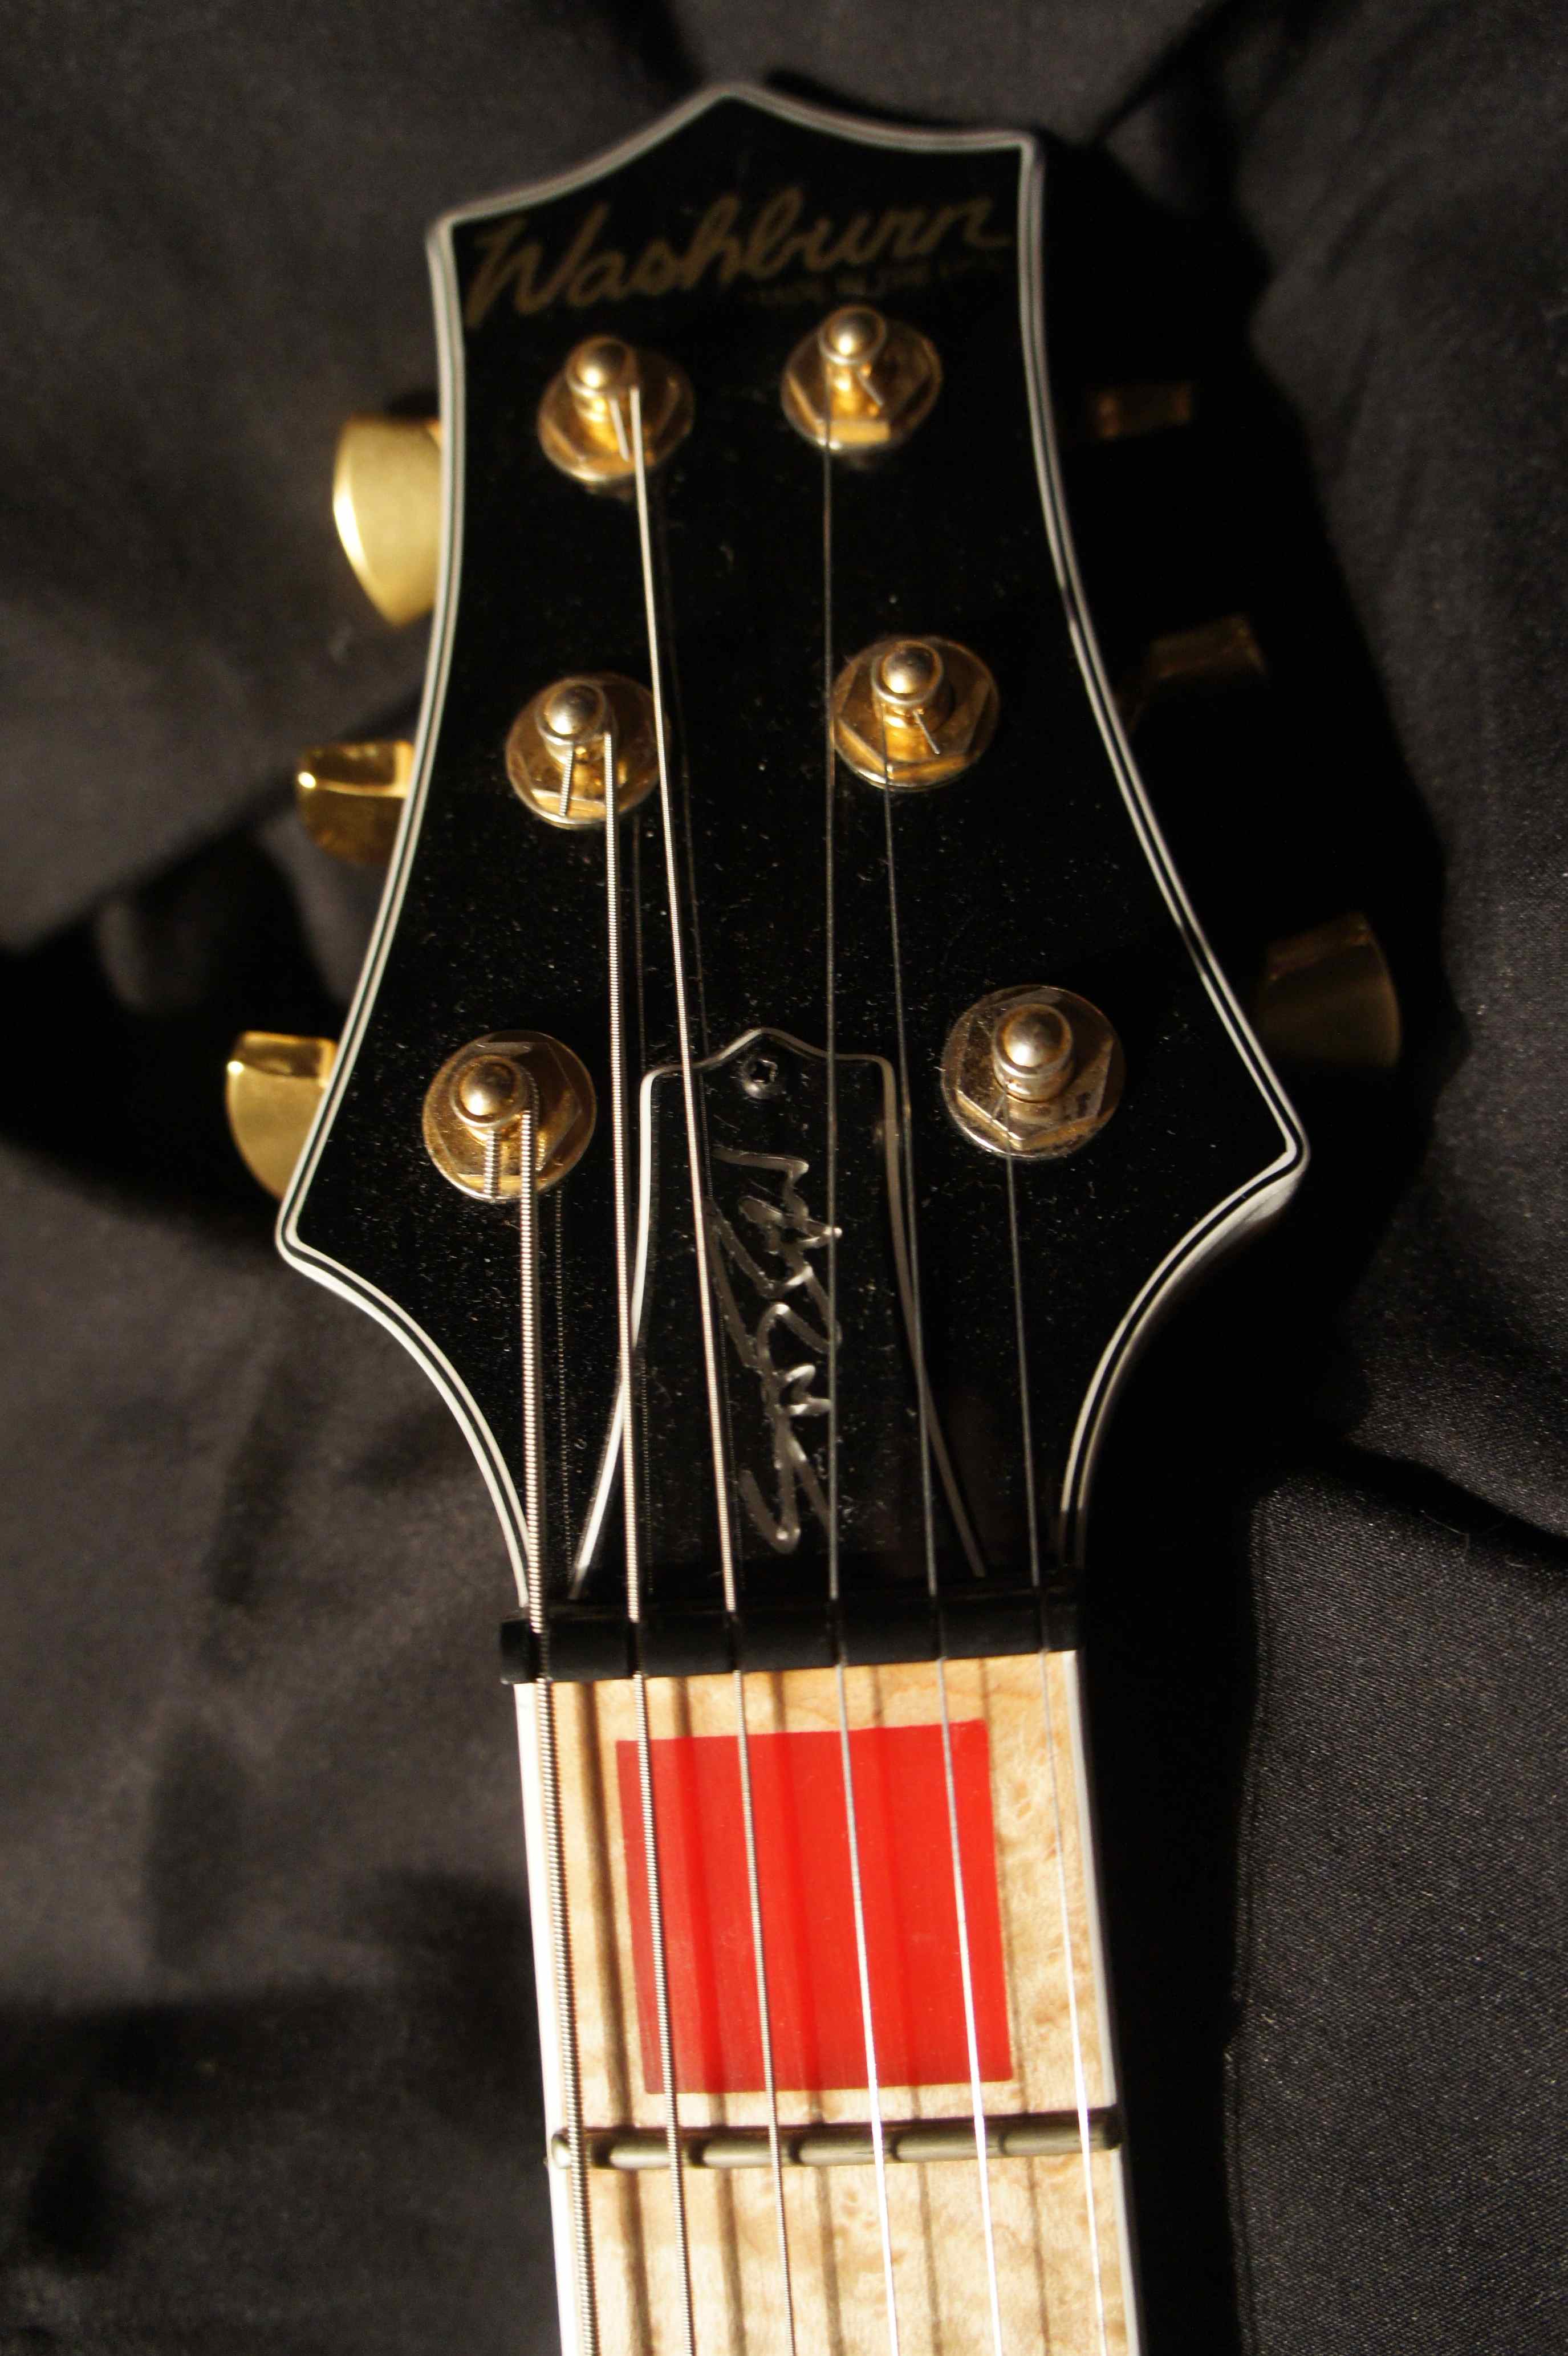 washburn guitar serial numbers